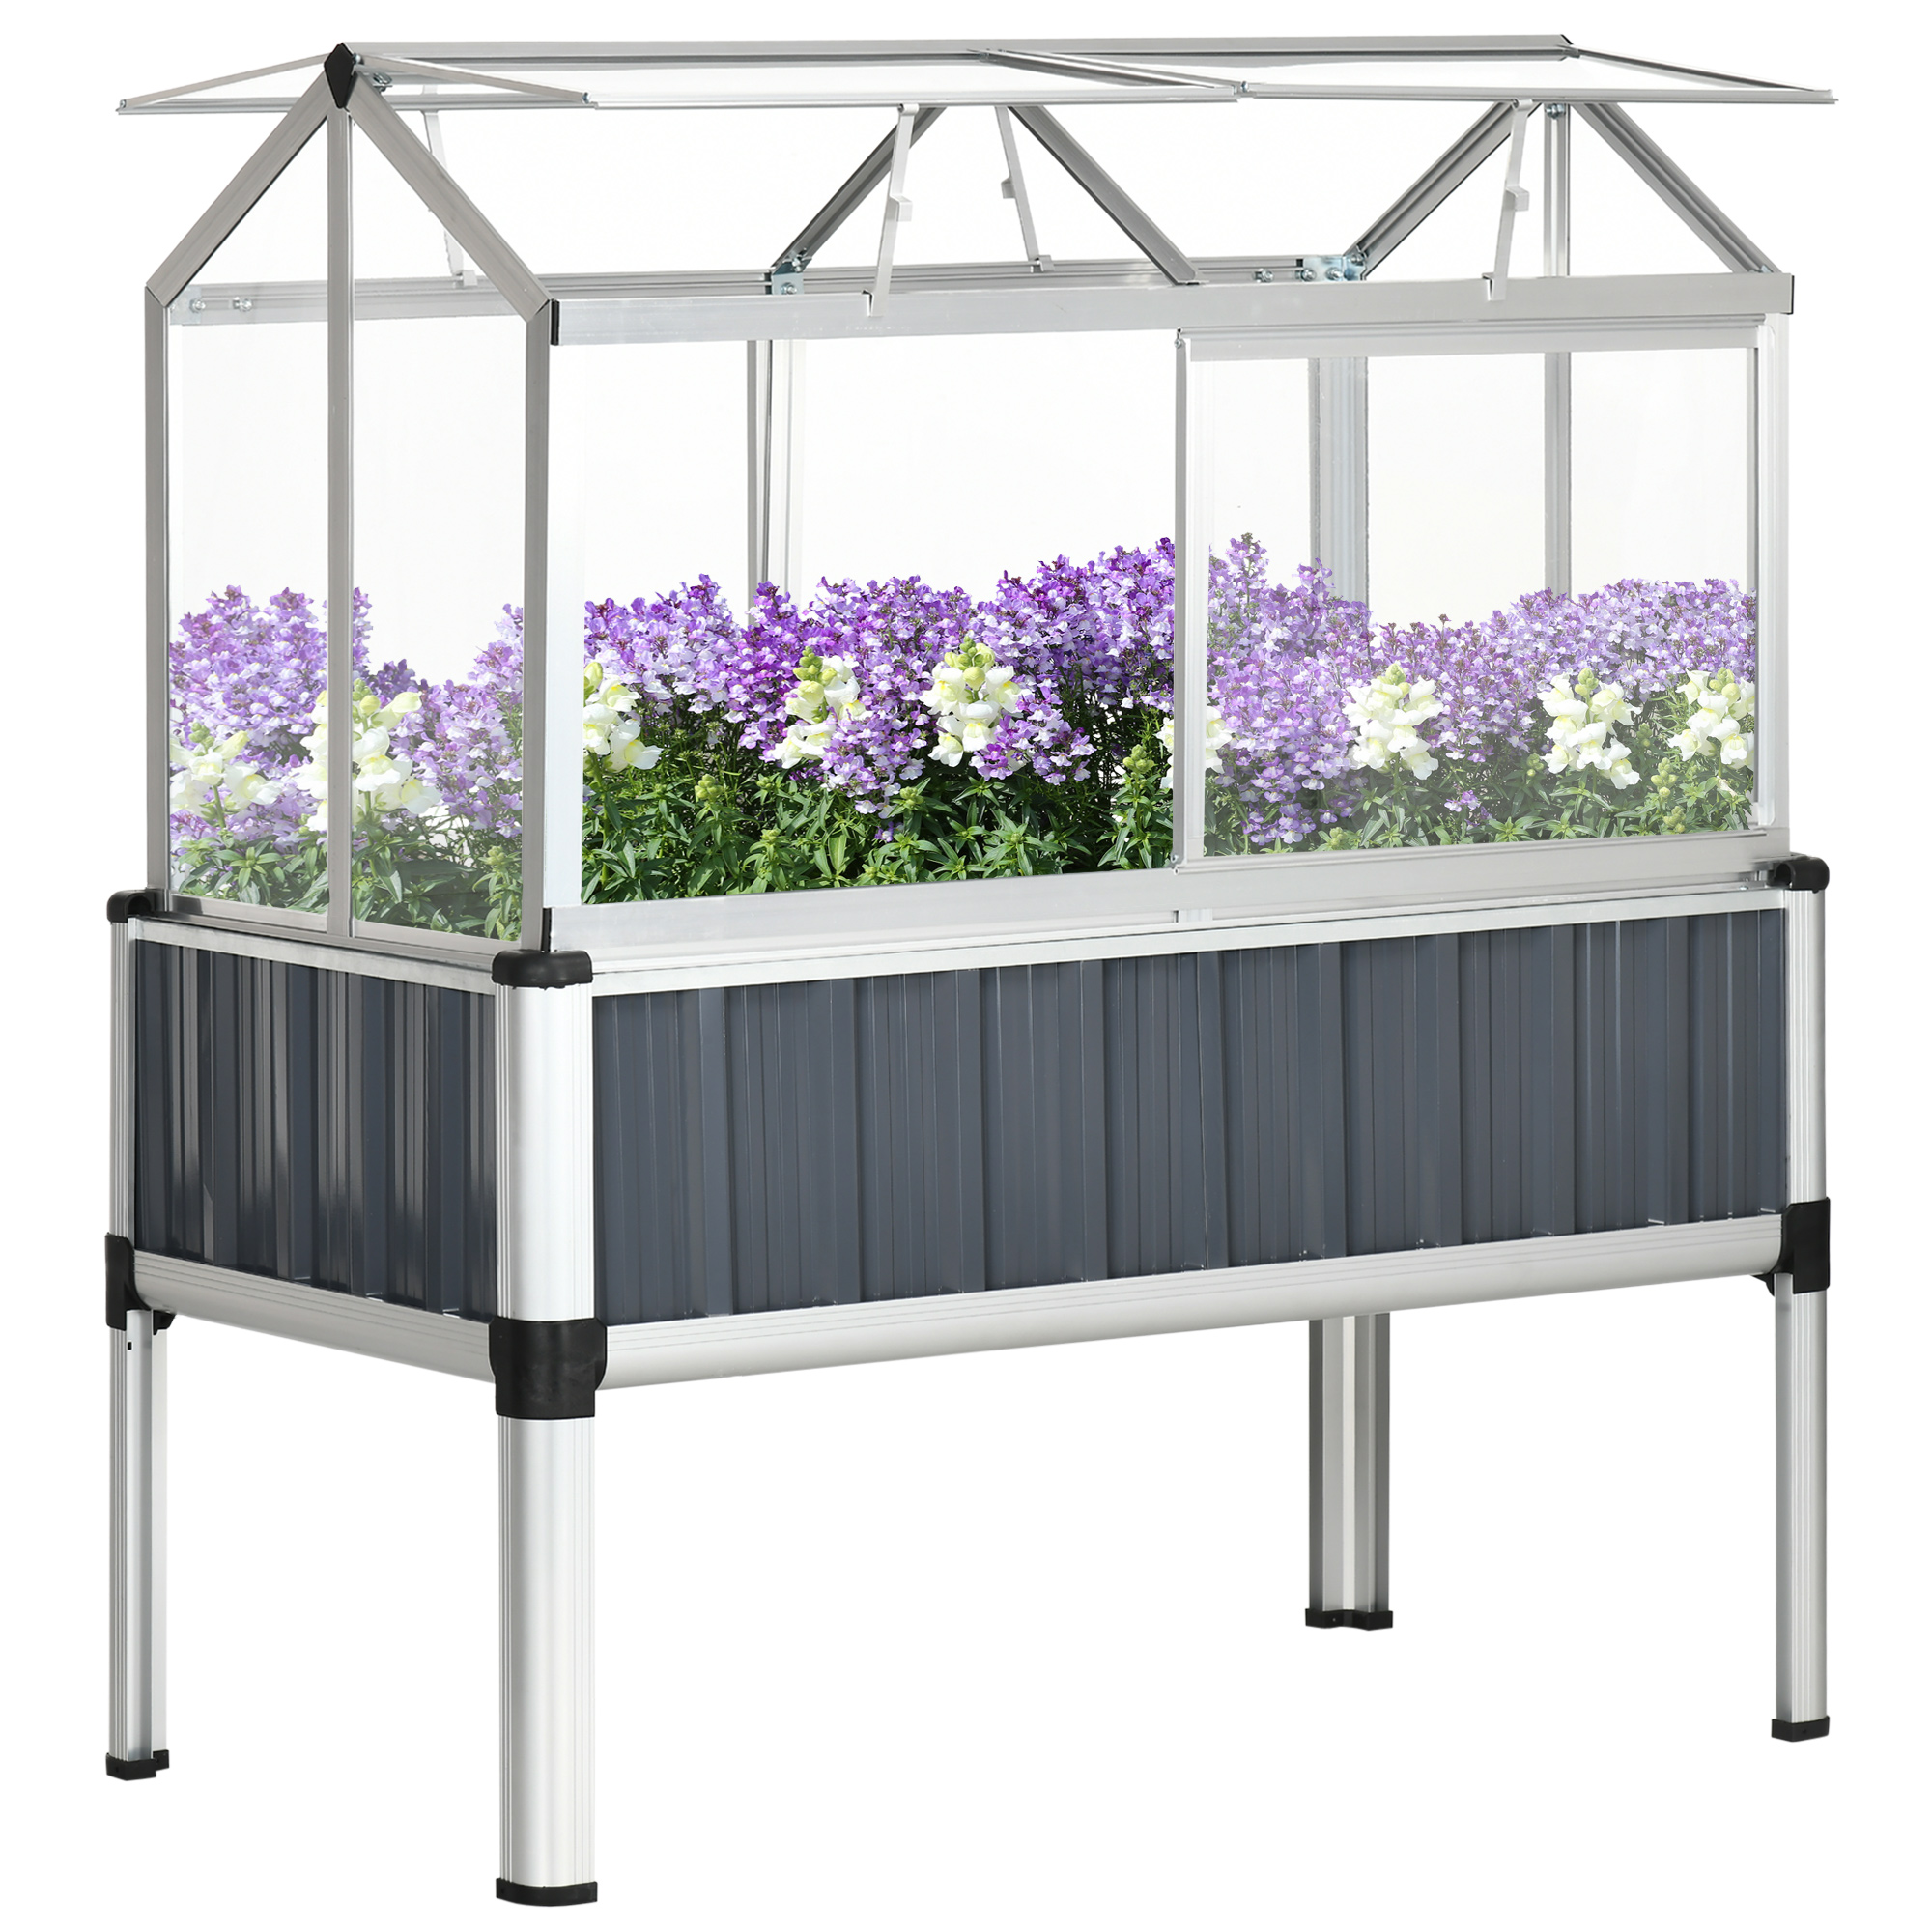 Raised Garden Bed with Greenhouse, 45"x24"x51", Dark Grey